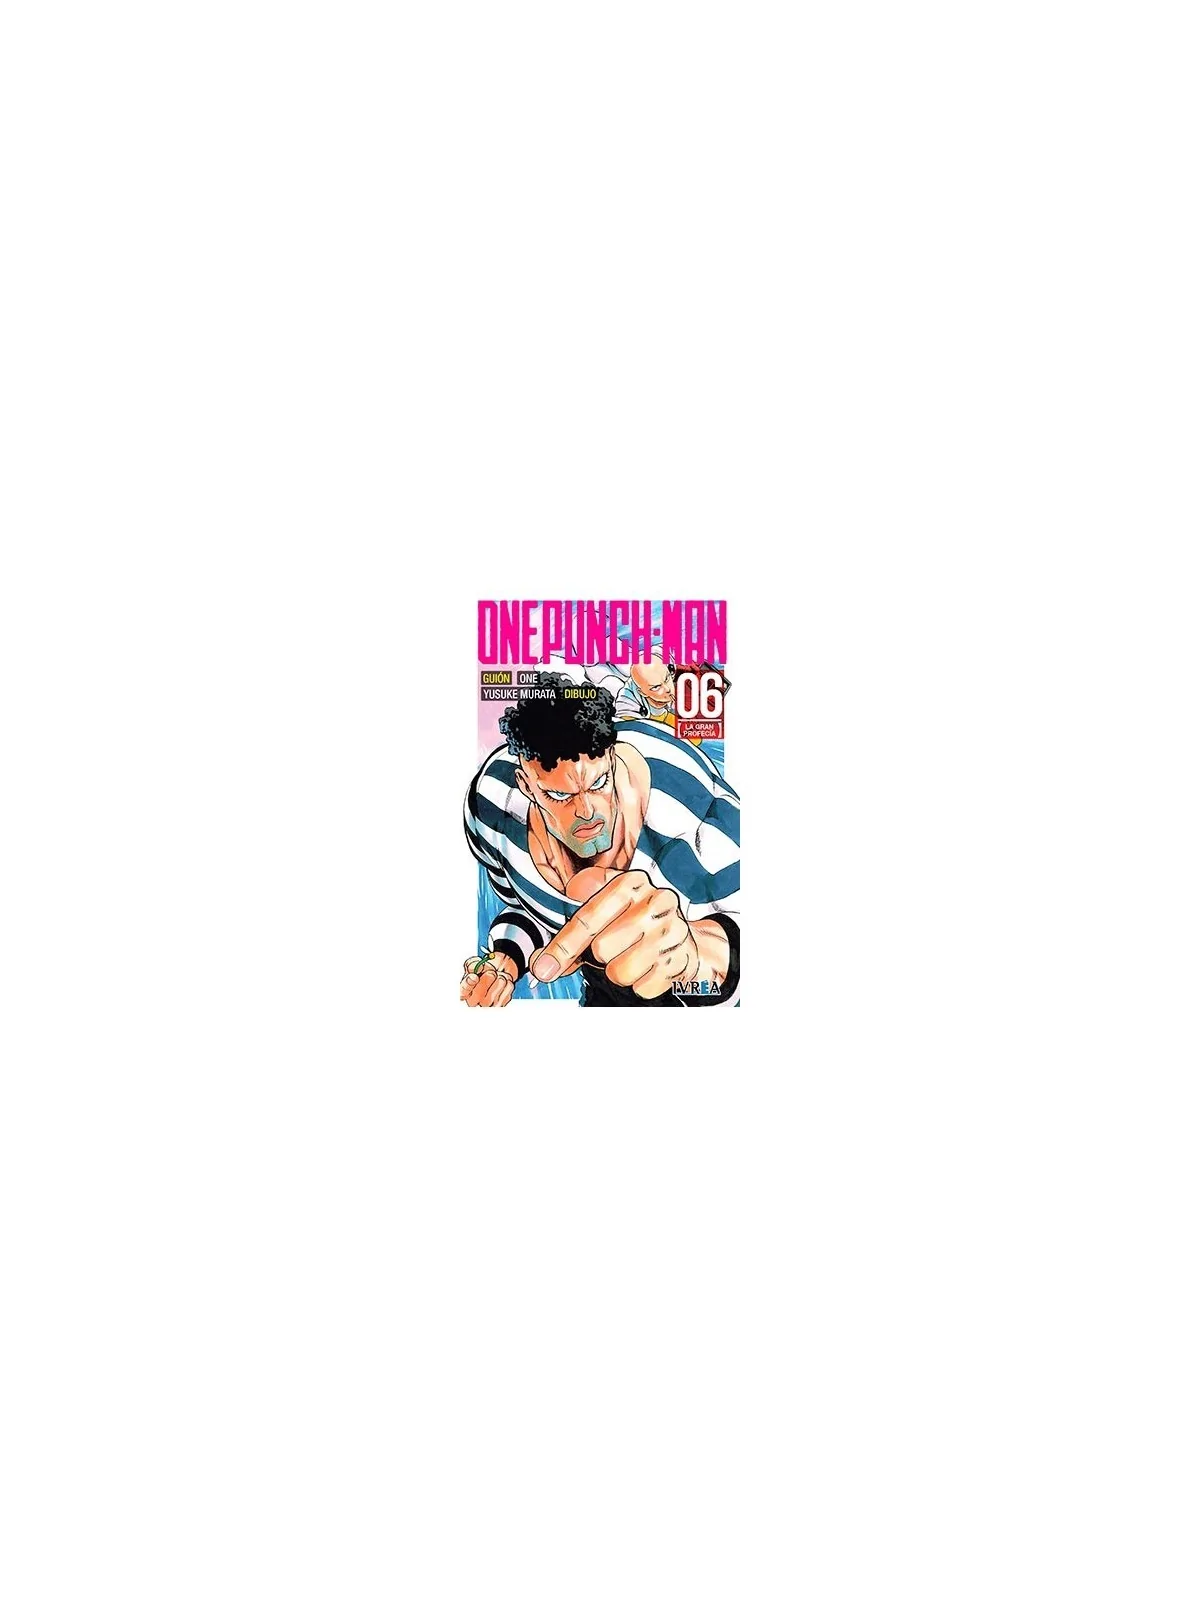 Comprar One Punch-Man 06 barato al mejor precio 7,60 € de Ivrea